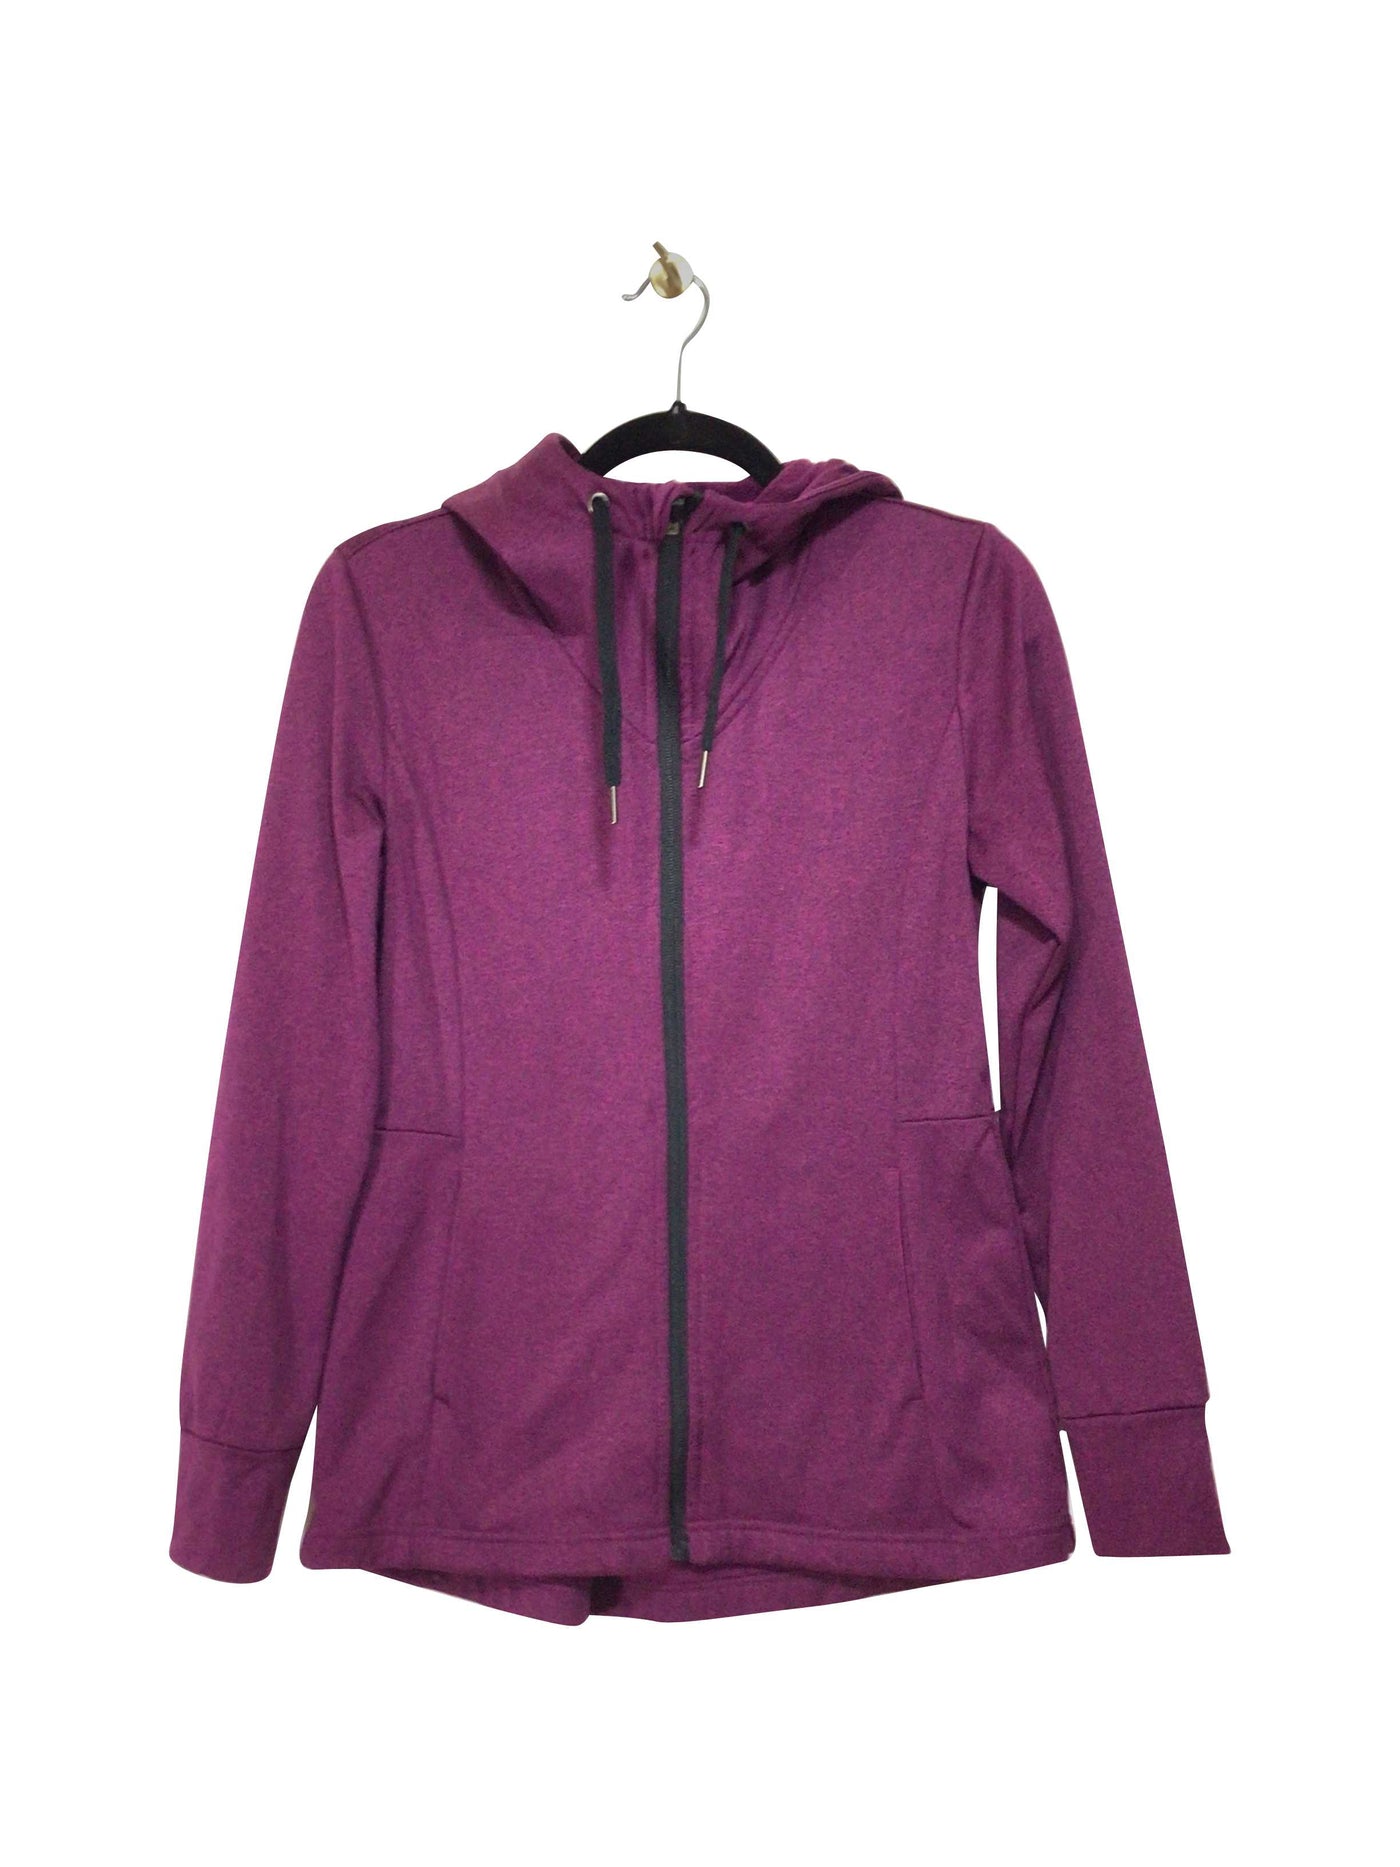 JOE FRESH Regular fit Activewear Top in Purple  -  XS  9.99 Koop